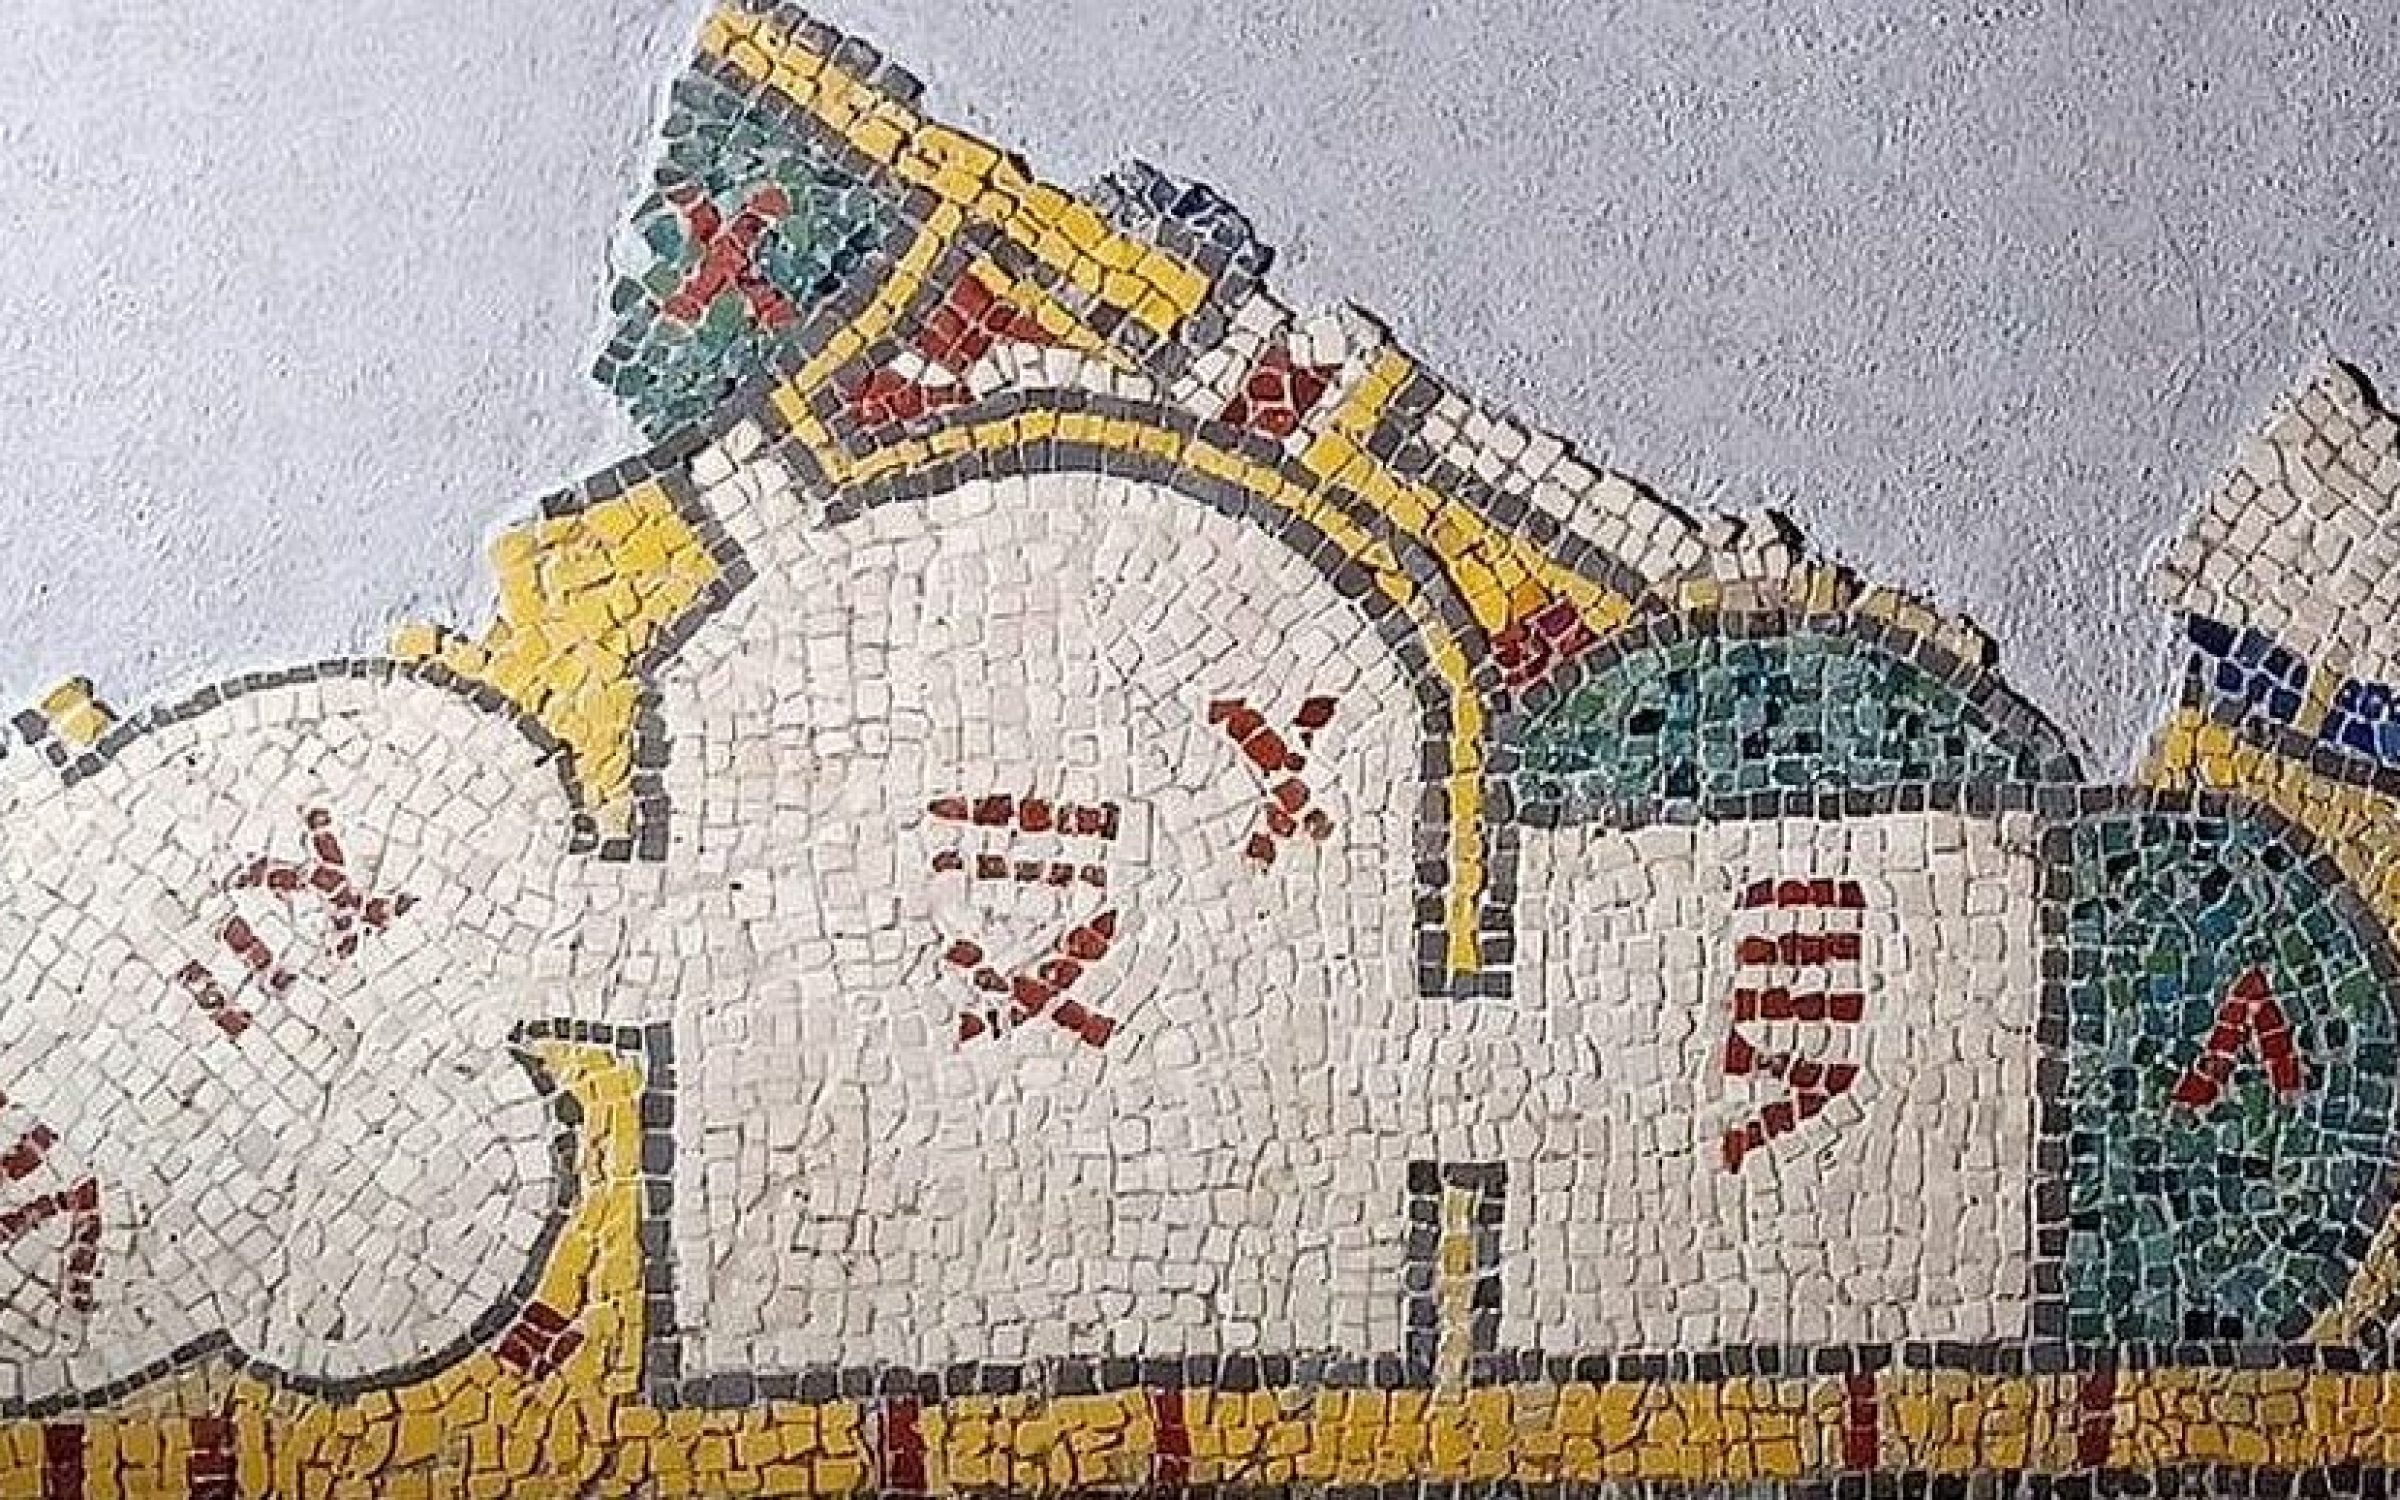 niezwykla-rzymska-mozaika-ukazujaca-plan-budynku